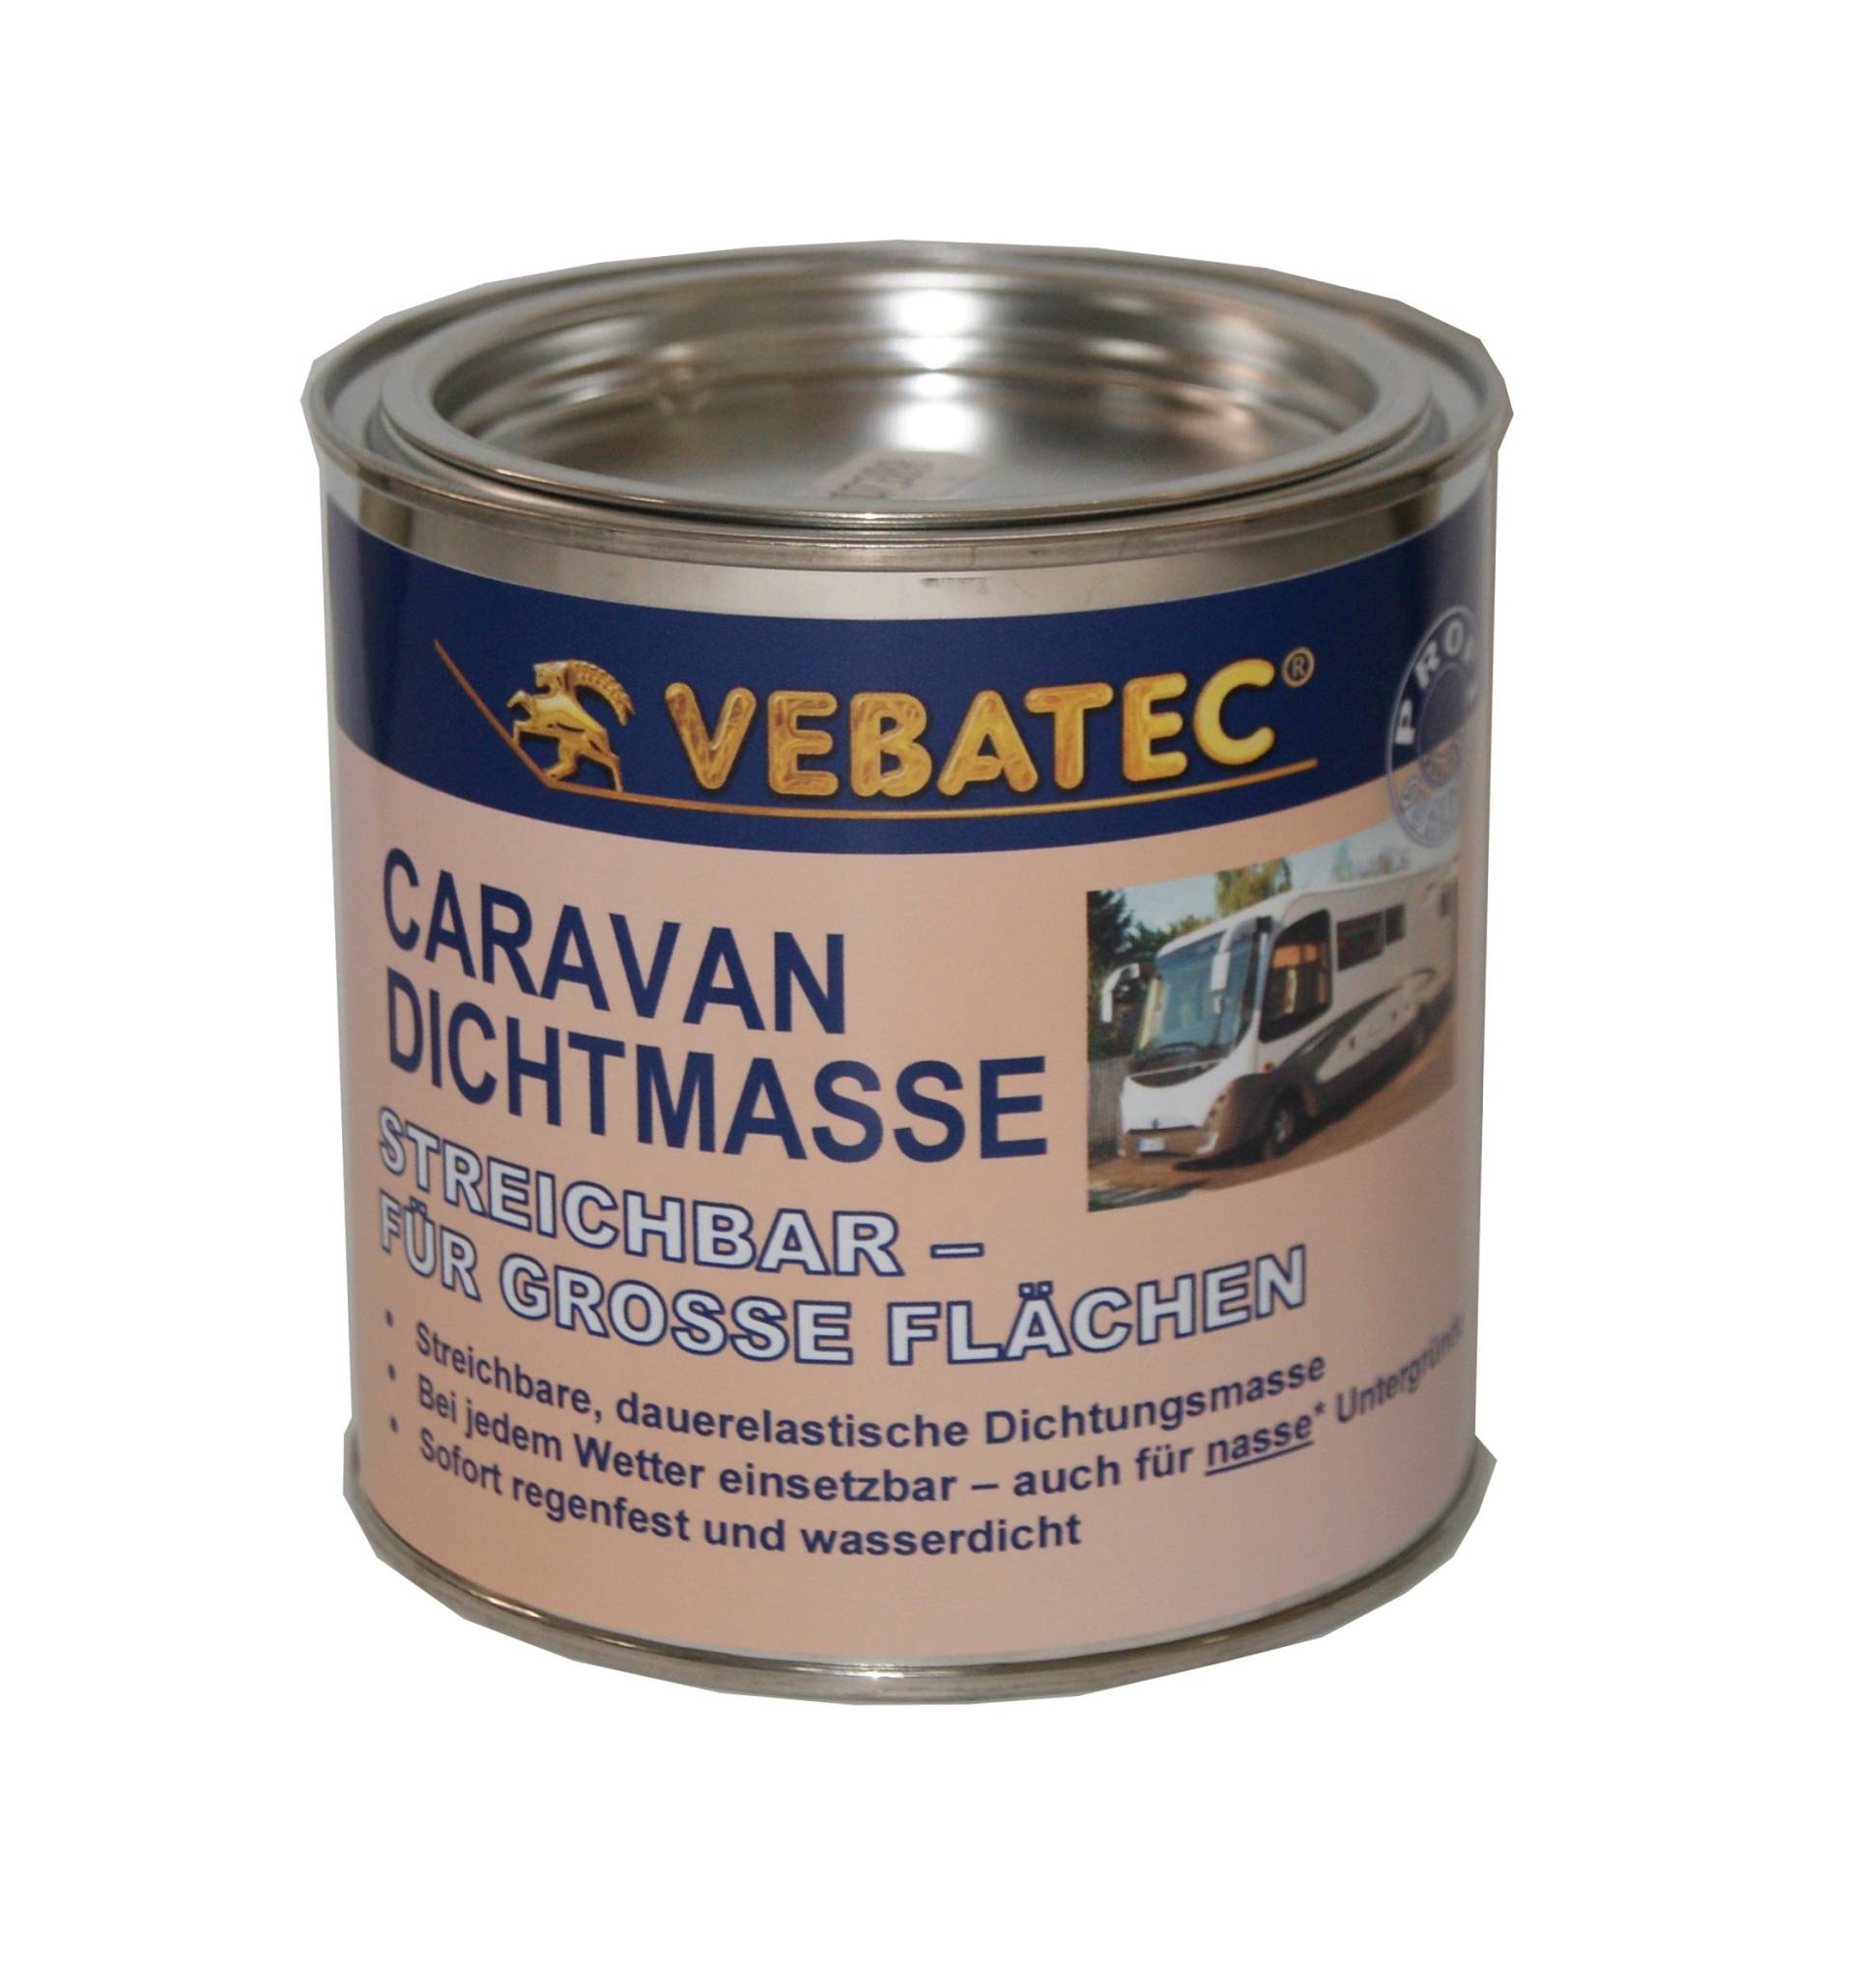 Vebatec Caravan Dichtmasse streichbar 750g von Vebatec